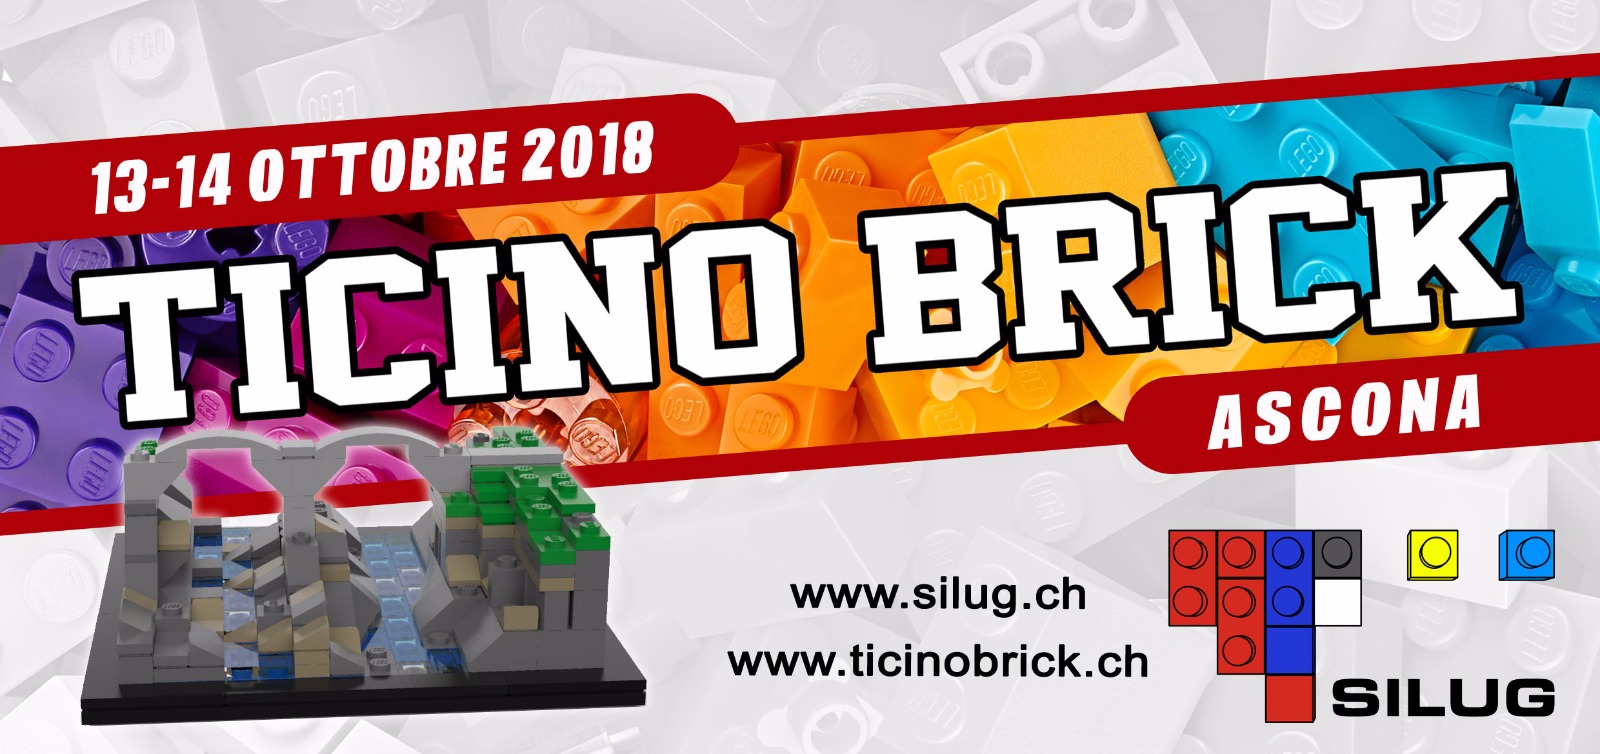 Ticino Brick 2018 SILUG